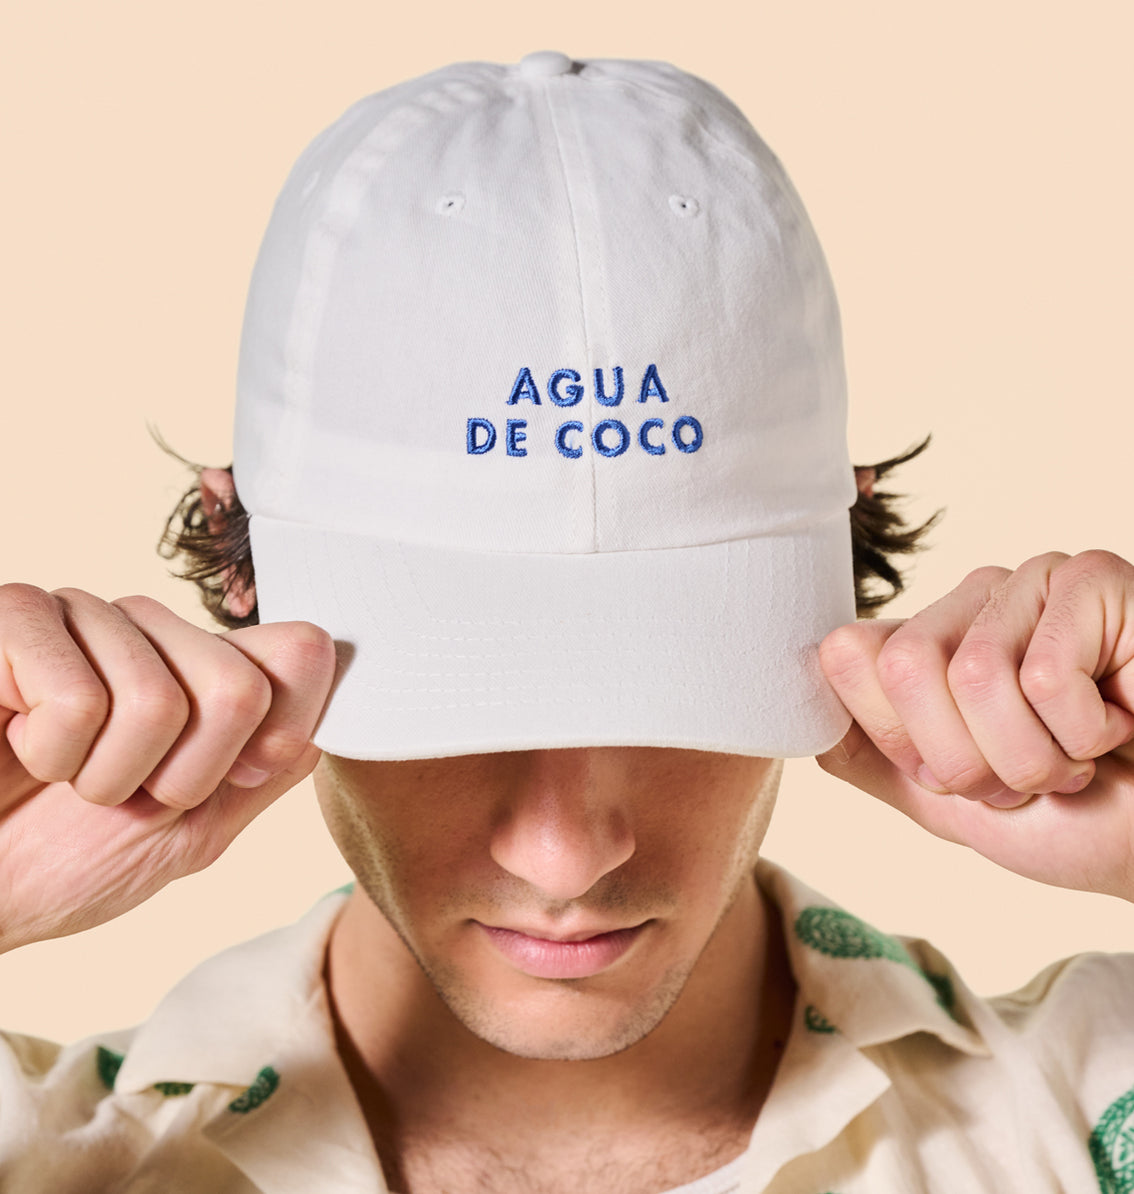 A person wearing a Agua de Coco Baseball Cap by Vita Coco.